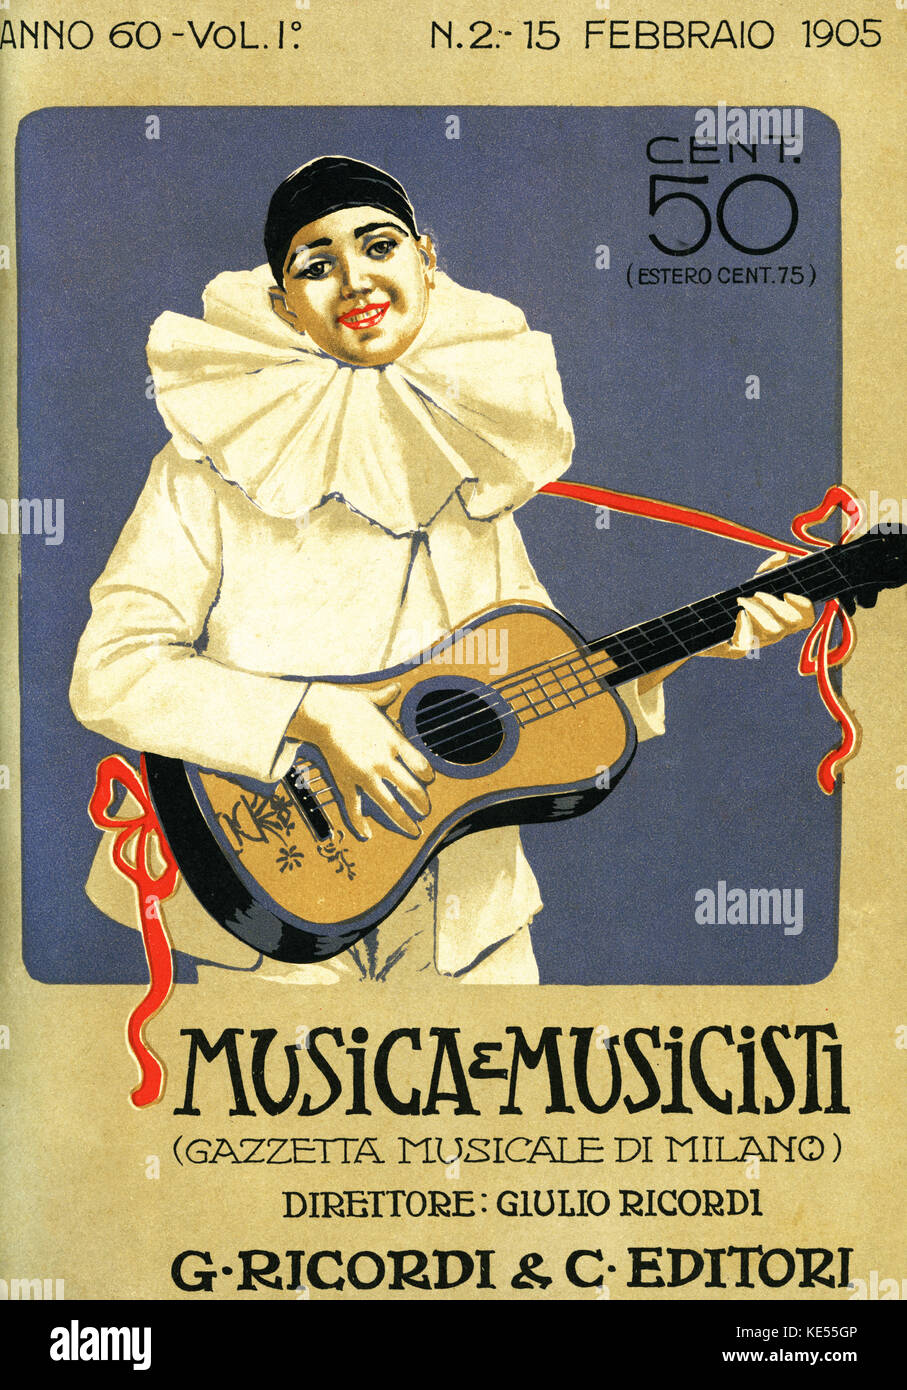 Pierrot jouant de la guitare. Couverture de magazine de musique italienne, ' e Musica Musicisti ' , la Gazette musicale de Milan, 1905. Style Art nouveau. Banque D'Images